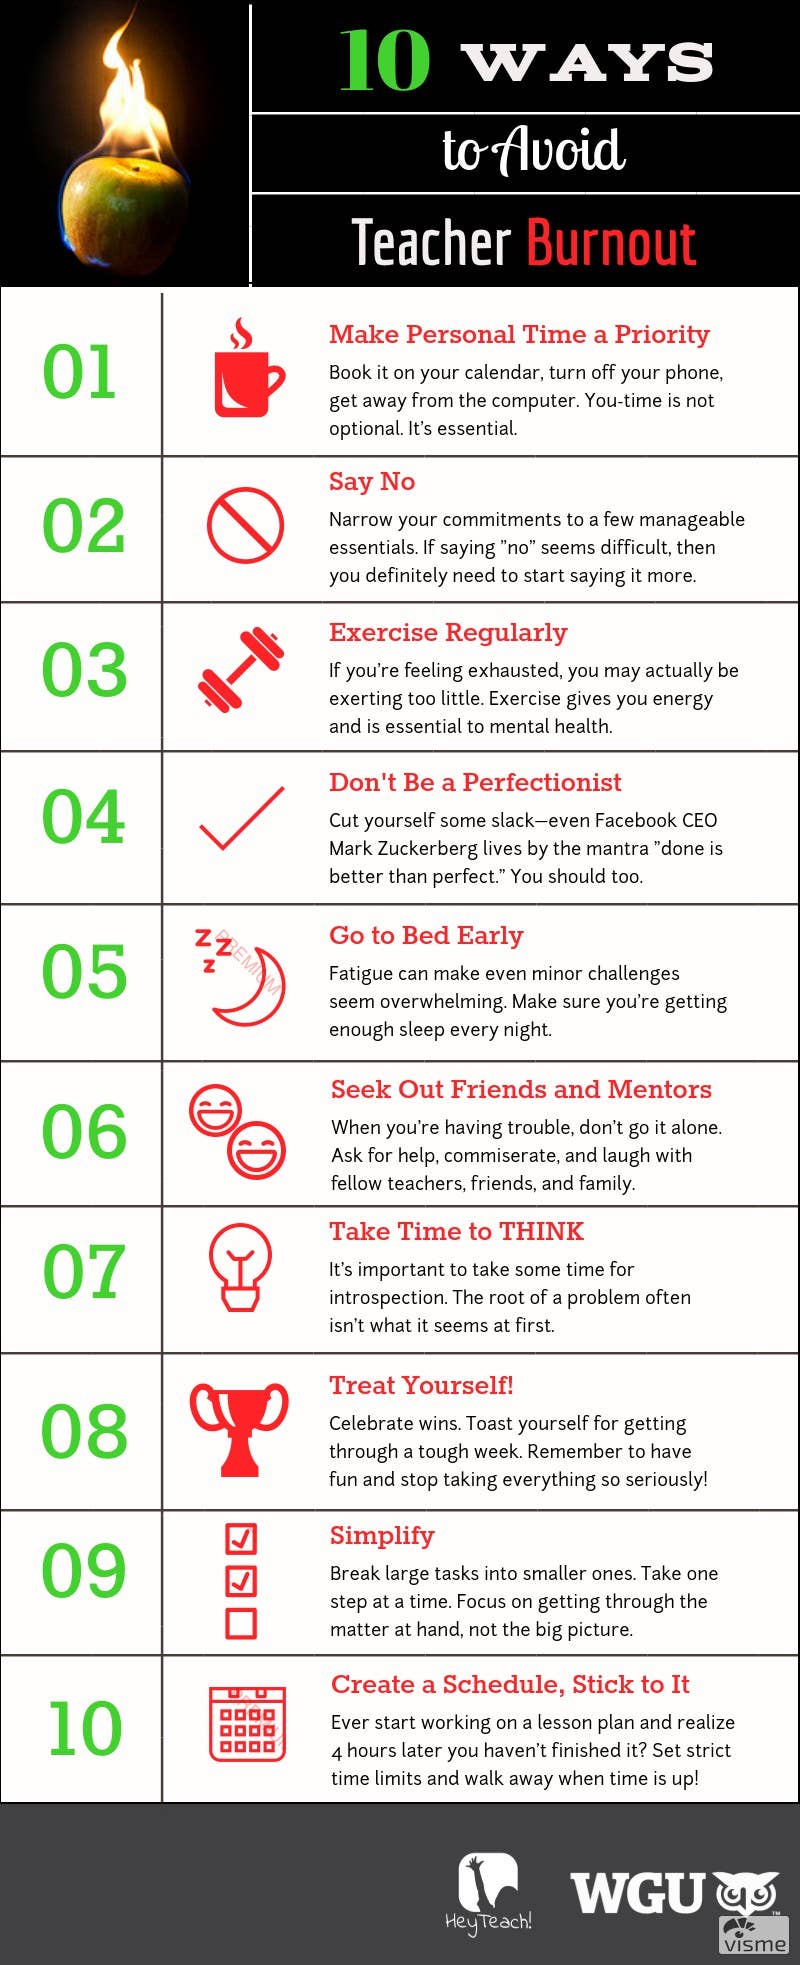 10 Ways to Avoid Teacher Burnout